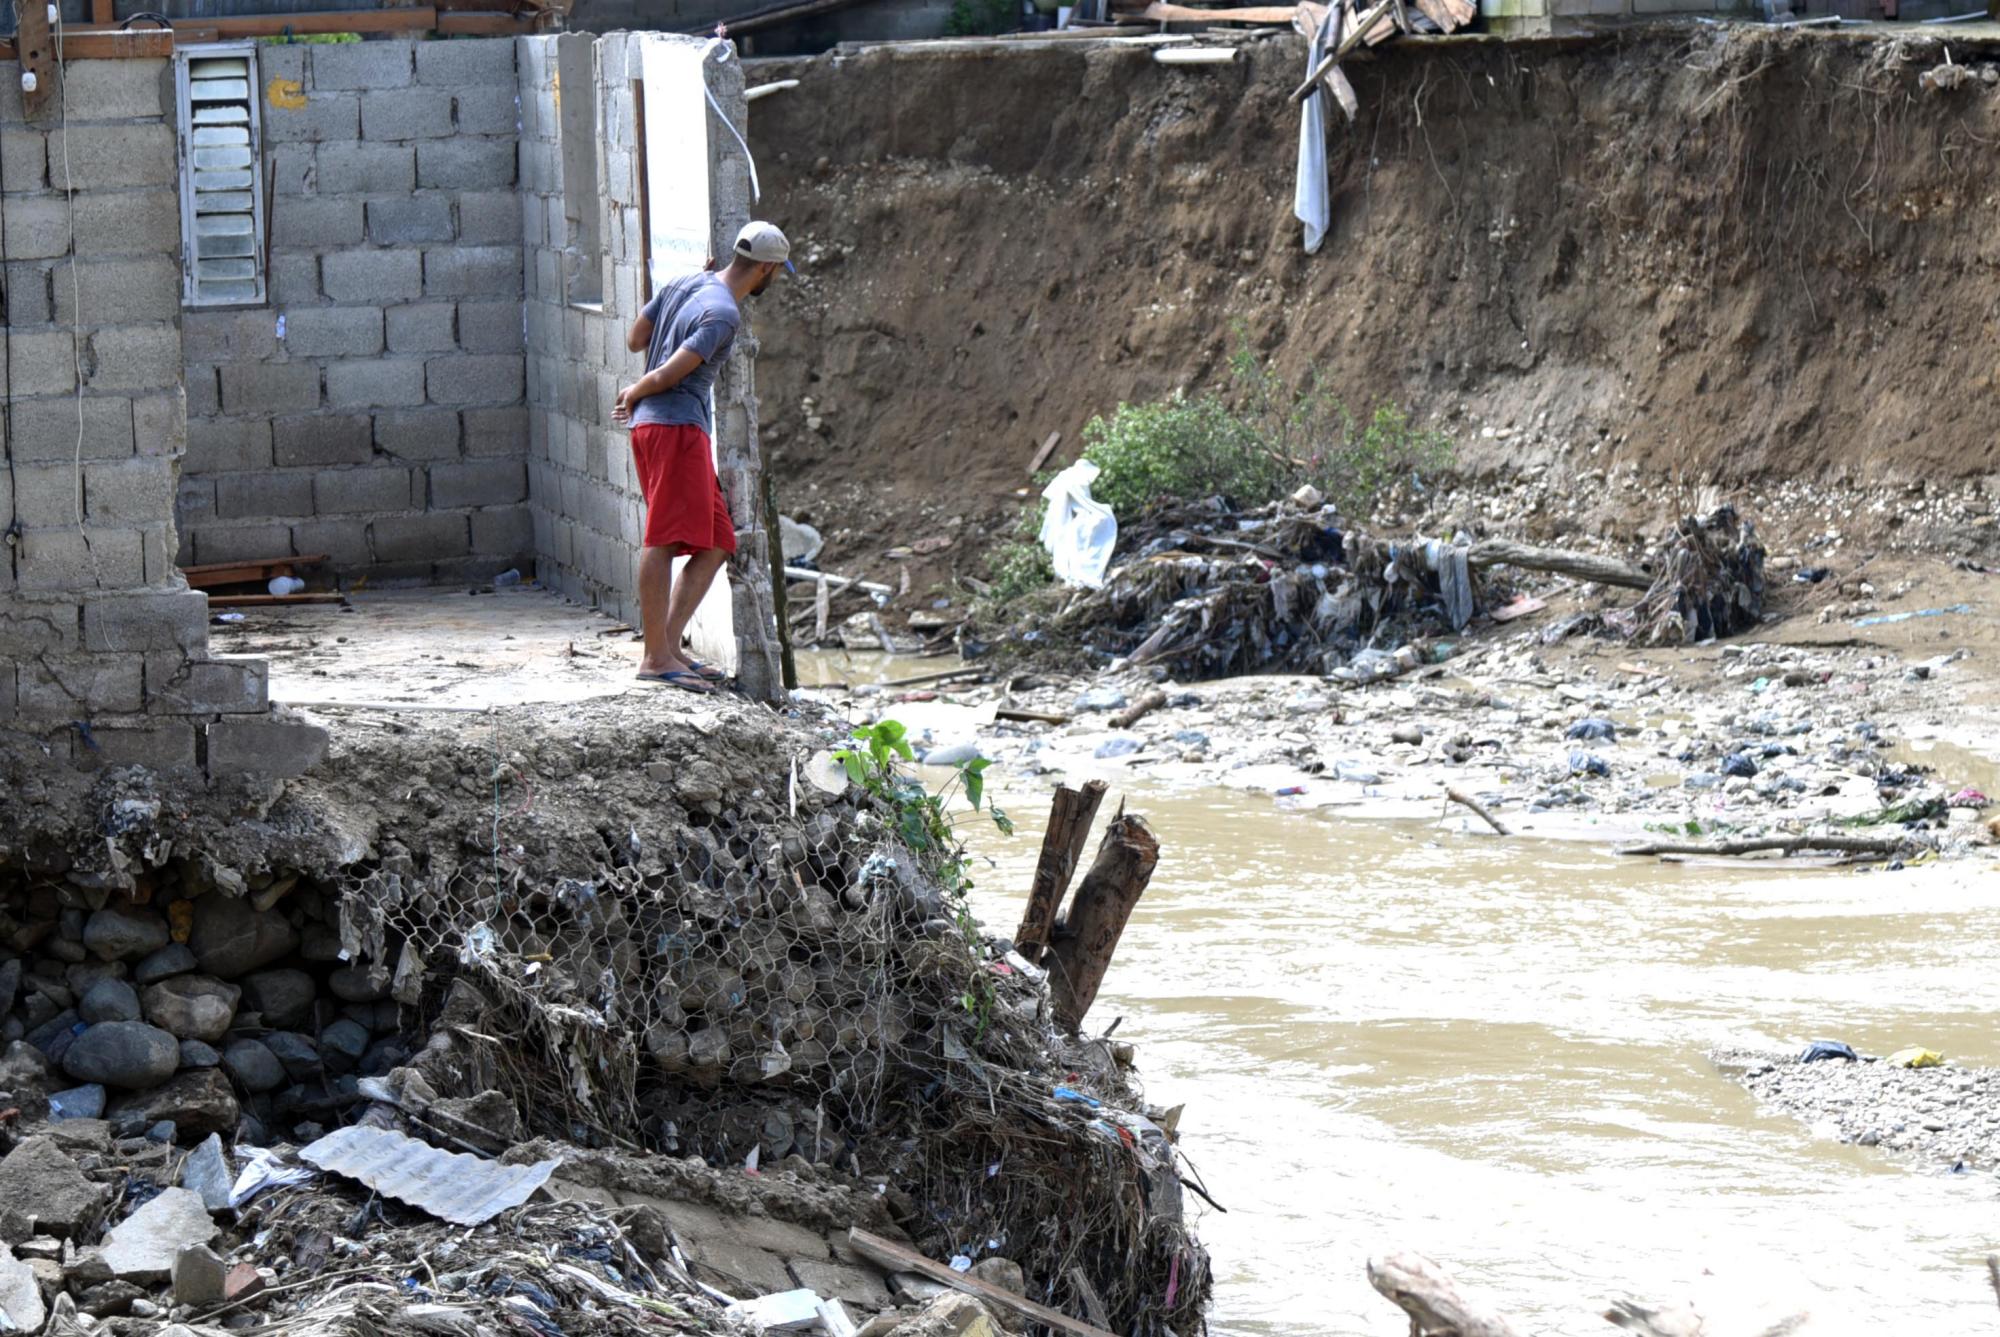  MOCA. Las incansables lluvias que provocaron un sinnúmero de inundaciones destrozaron cientos de viviendas mayormente en la zona del Cibao y el Norte de la nación. Aún los vecinos se recuperan de los estragos de la madre naturaleza.